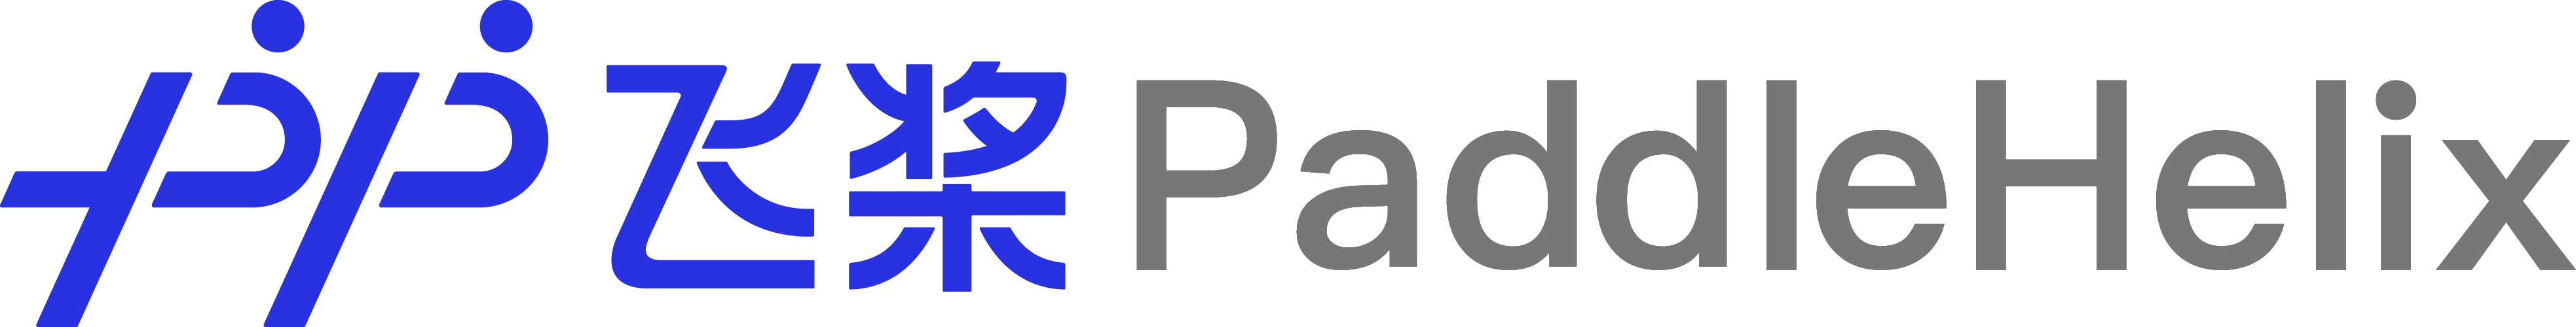 _images/paddlehelix_logo.png